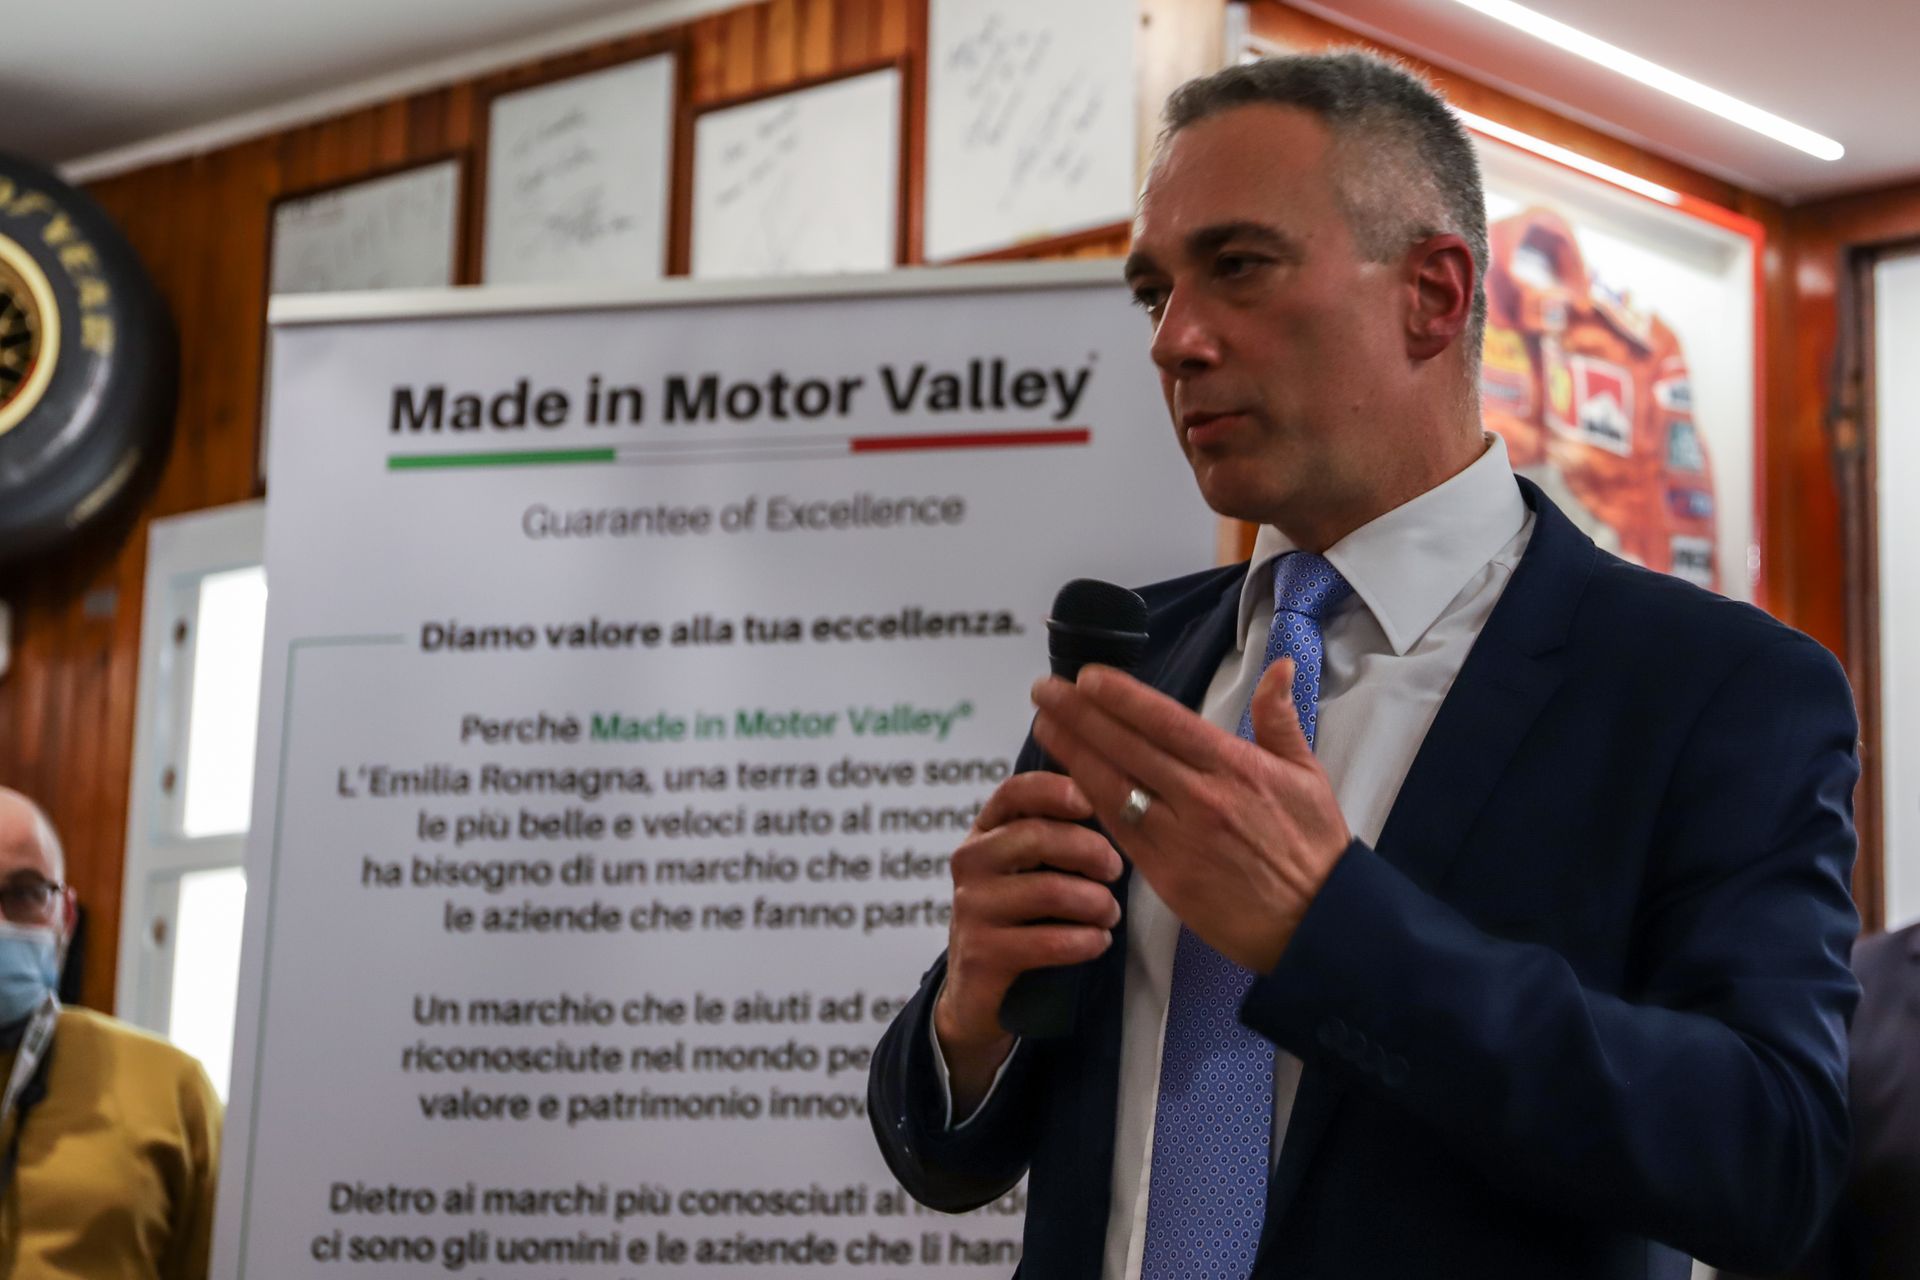 L'imprenditore finalese Socrate Zizza alla presentazione dell'iniziatia "Made in Motor Valley" a Fiorano Modenese